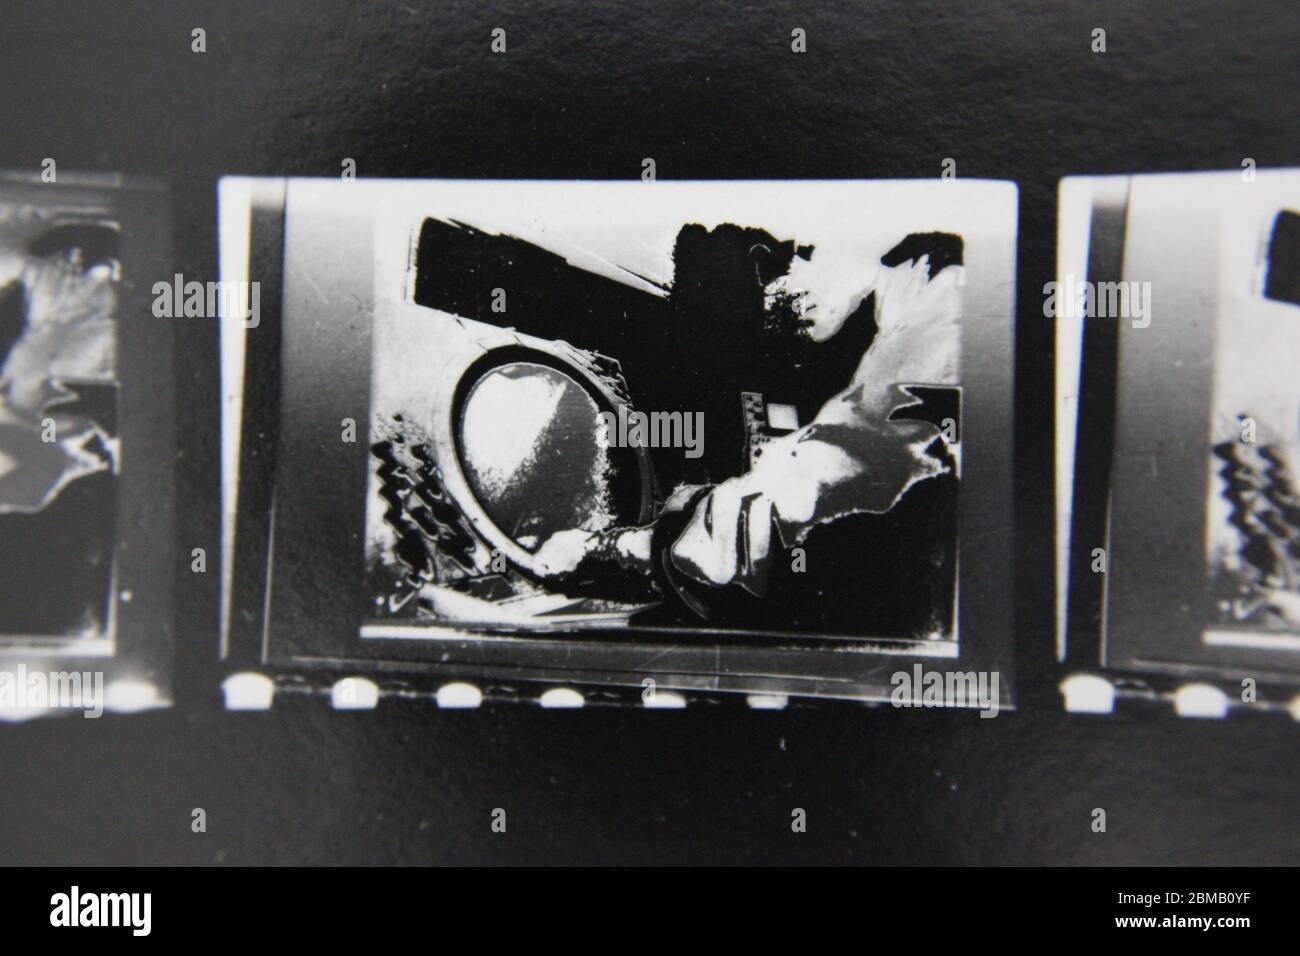 Fin 70s vintage contact imprimer noir et blanc photographie extrême d'un contrôleur de trafic aérien regardant un écran radar. Banque D'Images